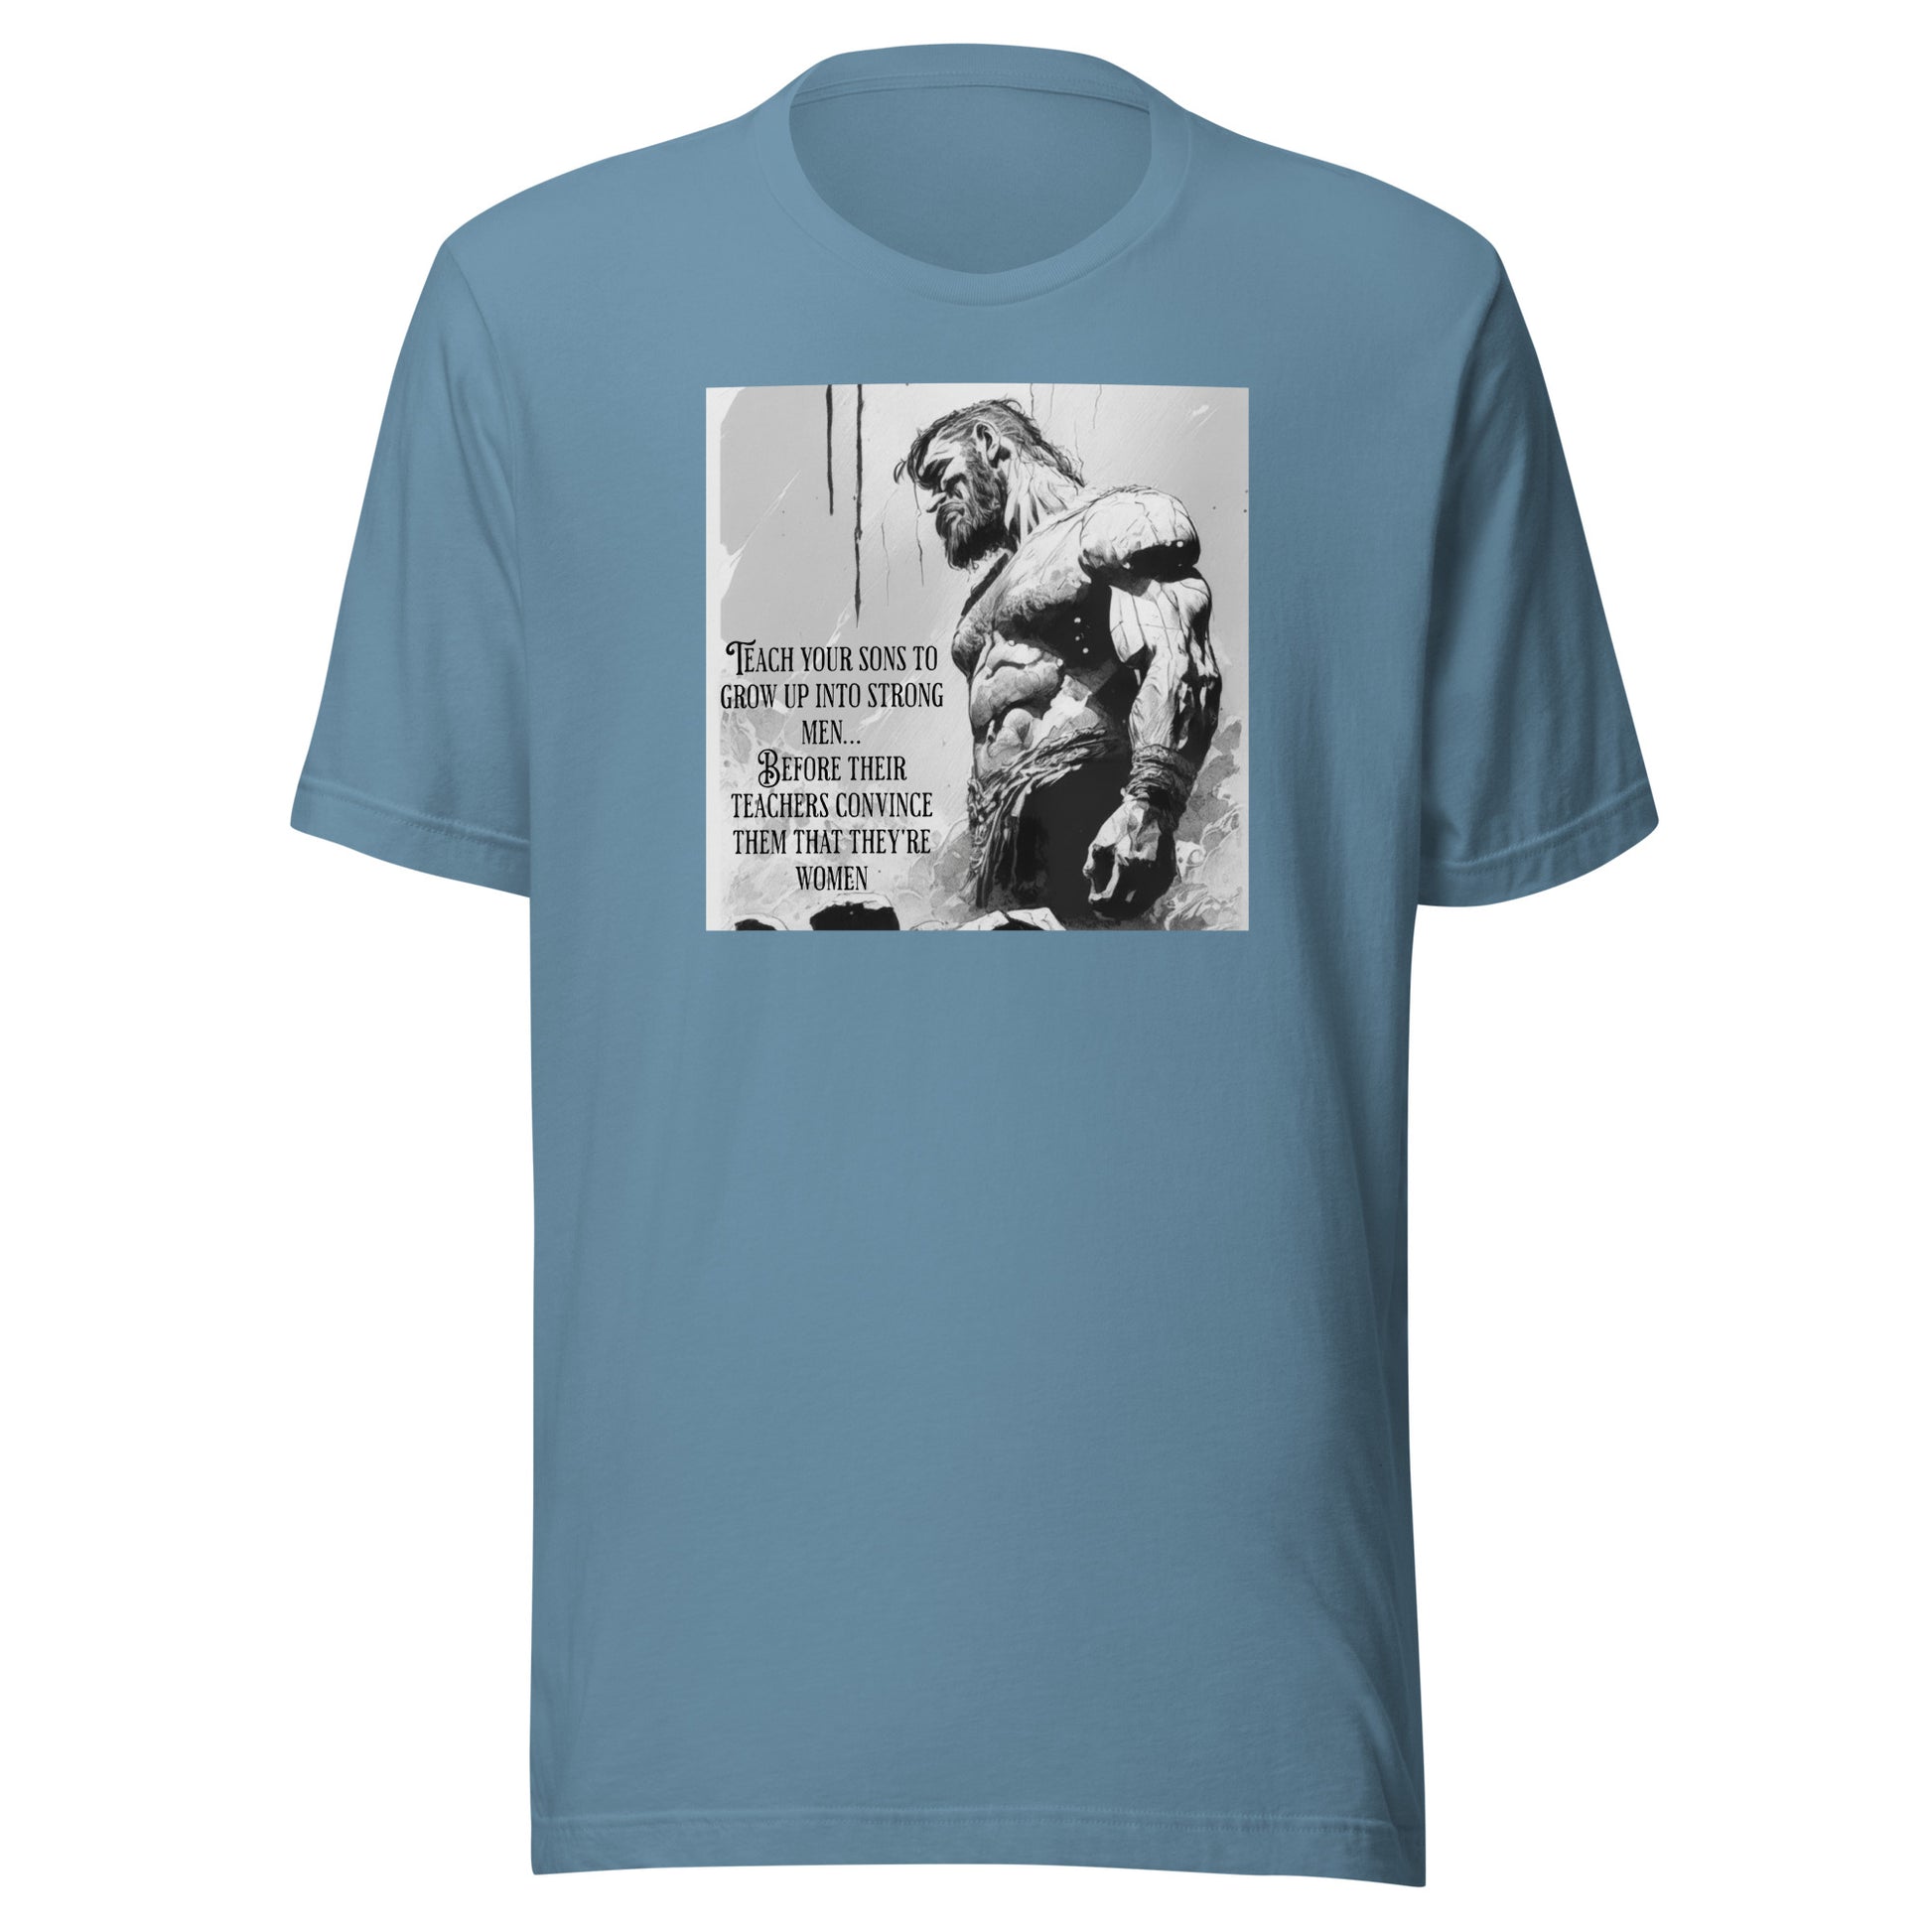 Raise Strong Men Graphic Men's T-Shirt Steel Blue